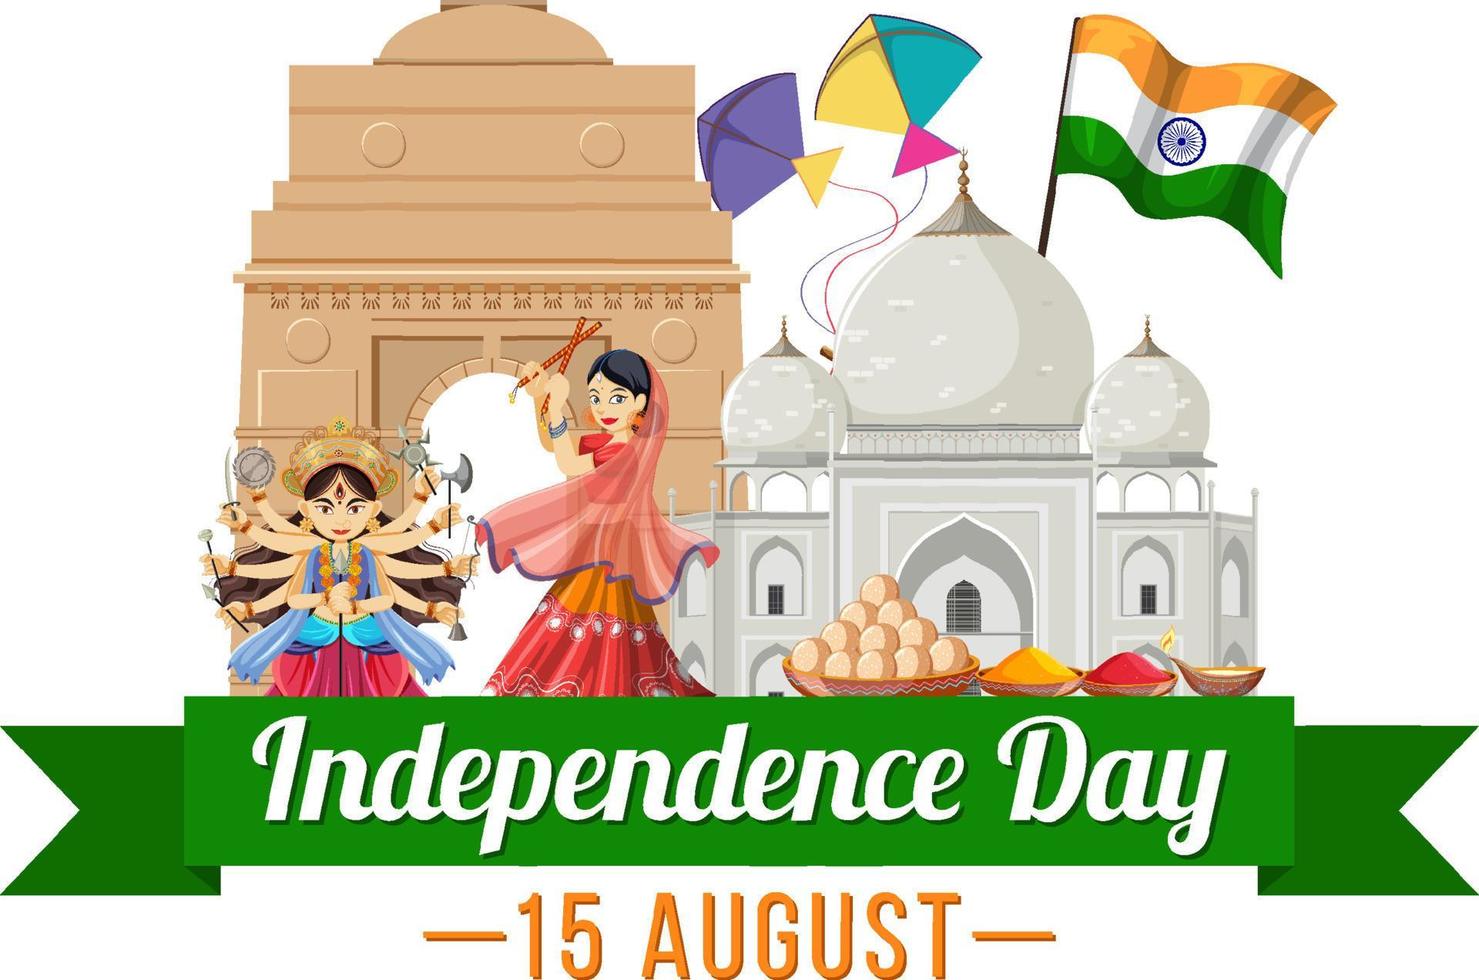 felice giorno dell'indipendenza dell'india vettore